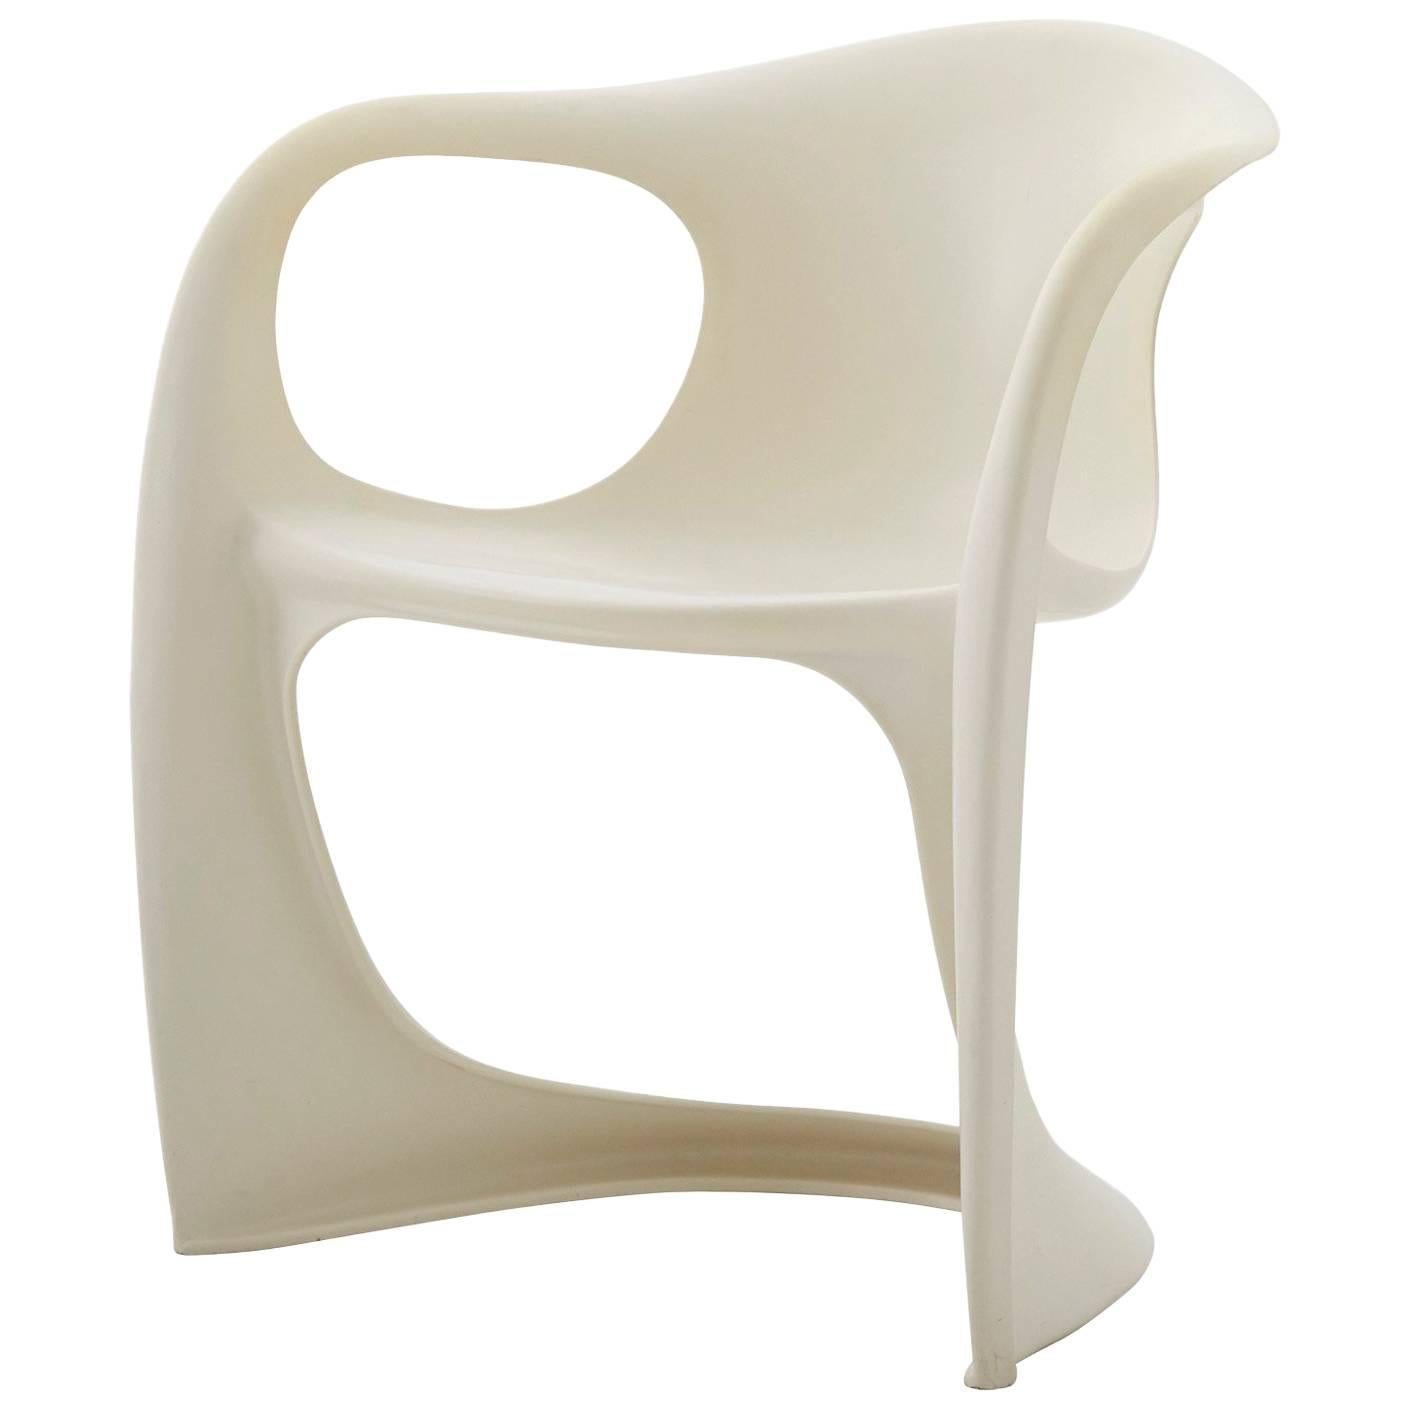 Fiberglass Cantilever Chair